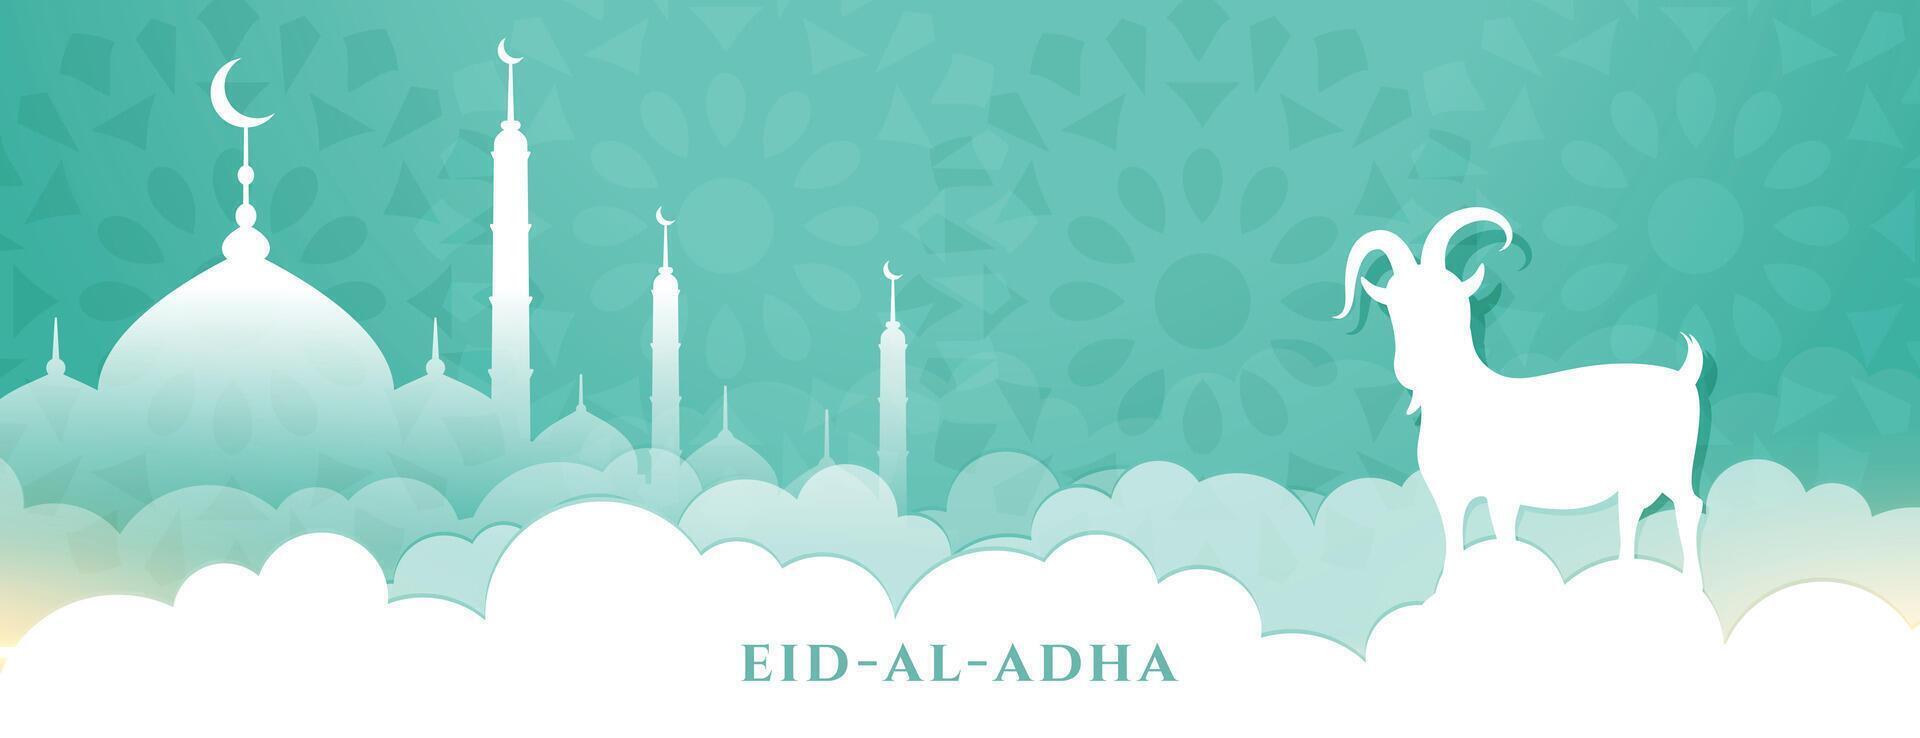 härlig eid al Adha festival baner design vektor